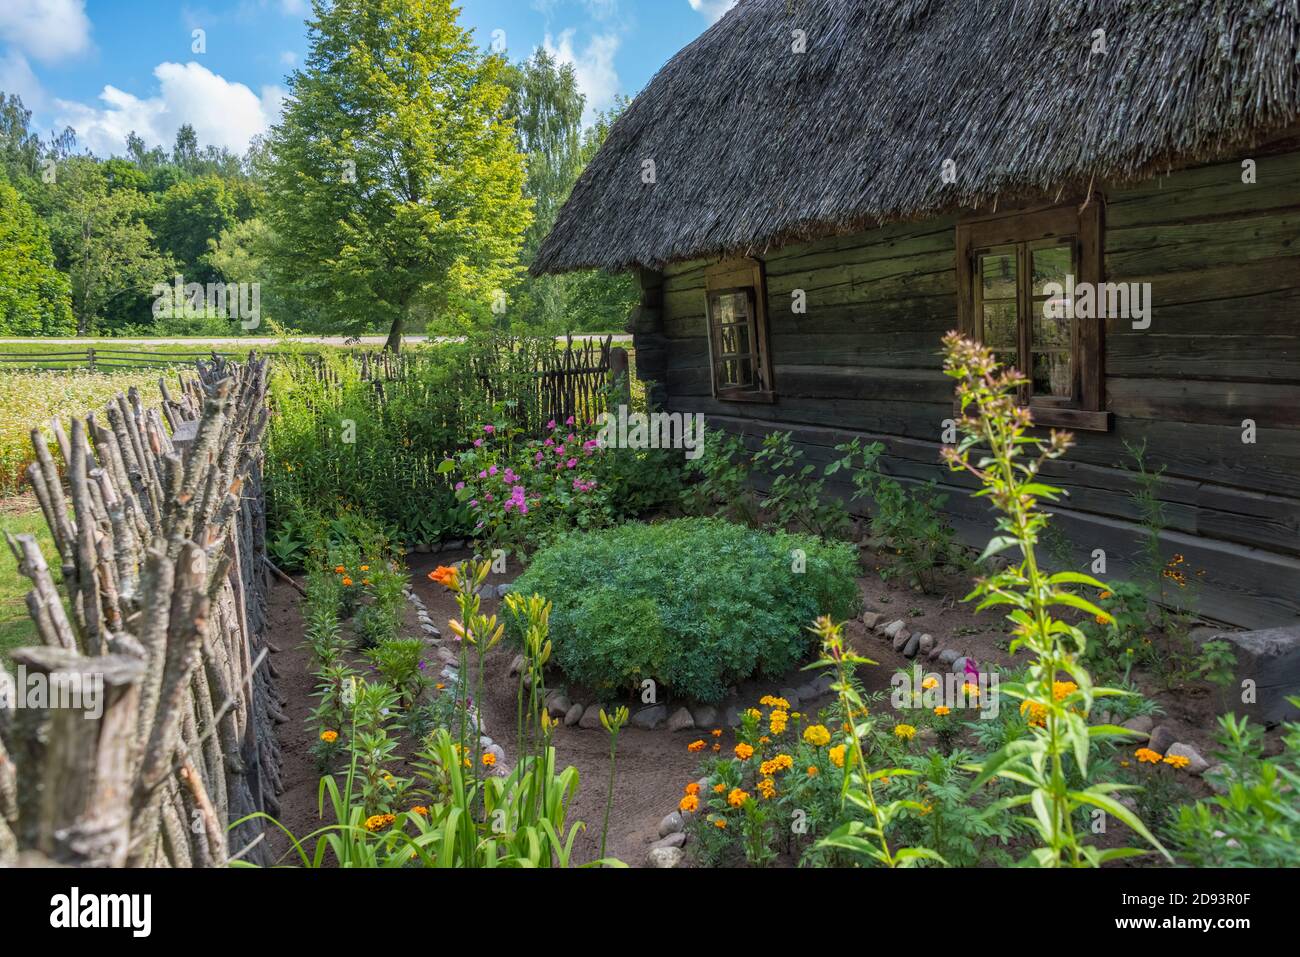 Maison en bois avec jardin dans le musée ethnographique en plein air de Rumsiskes, Lituanie Banque D'Images